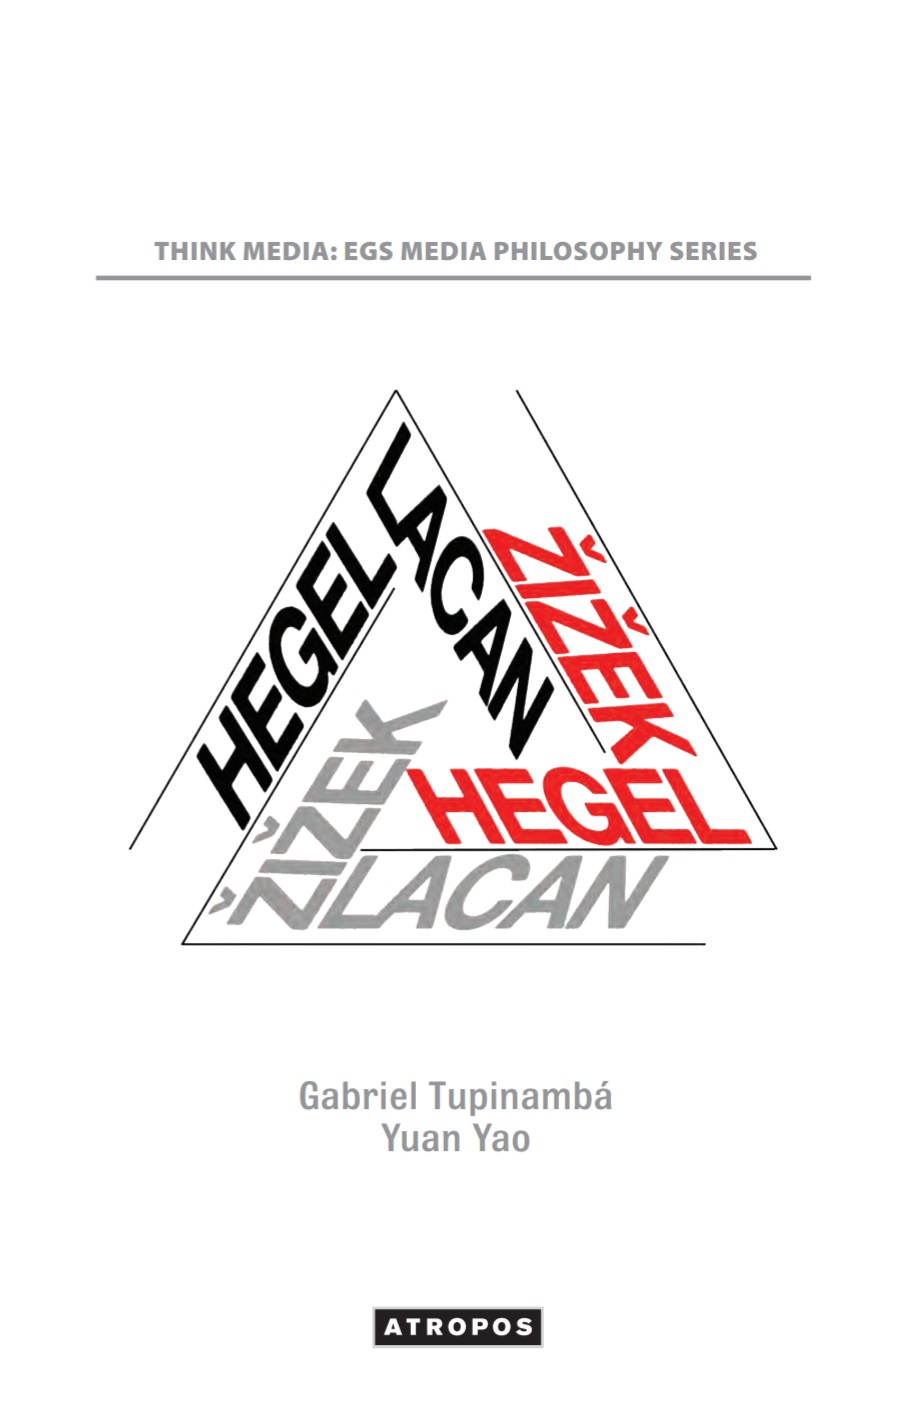 Gabriel-tupinamba-hegel-lacan-zizek-theoryleaks.jpg